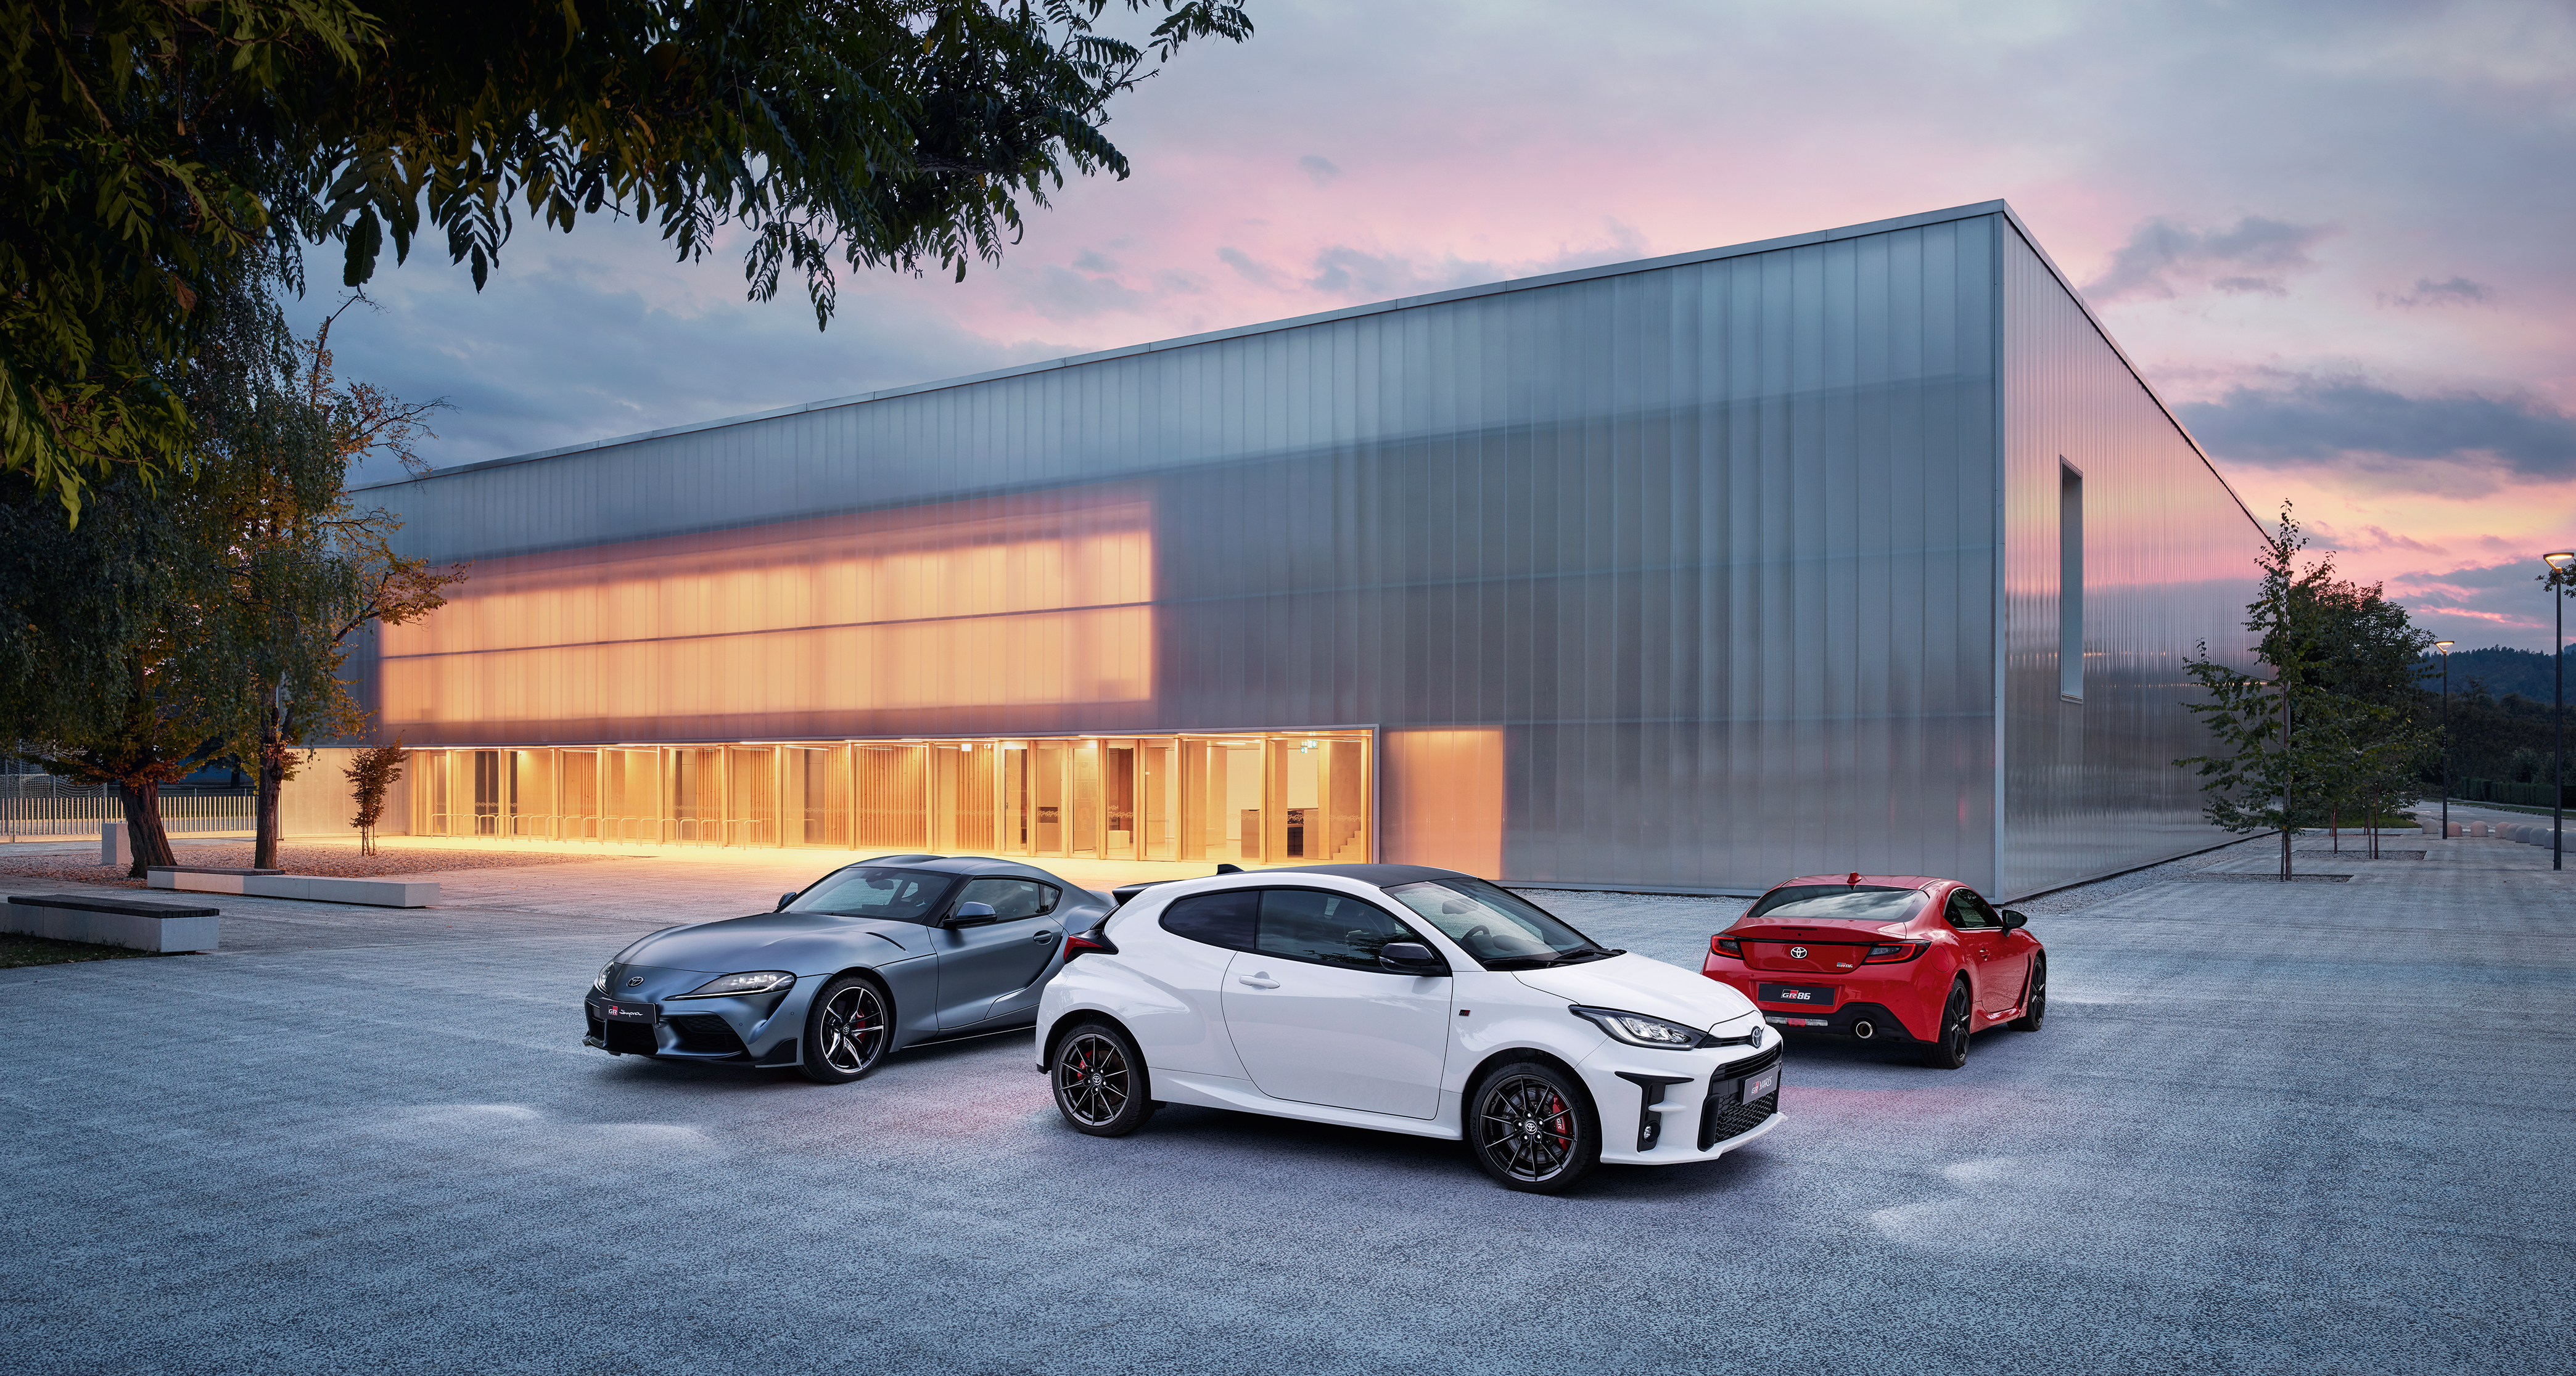 Drei GR Modelle stehen geparkt vor einer modernen Fabrikhalle. Ein weißer GR Yaris, ein roter GR 86 und ein grau-metallic-farbener GR Supra.